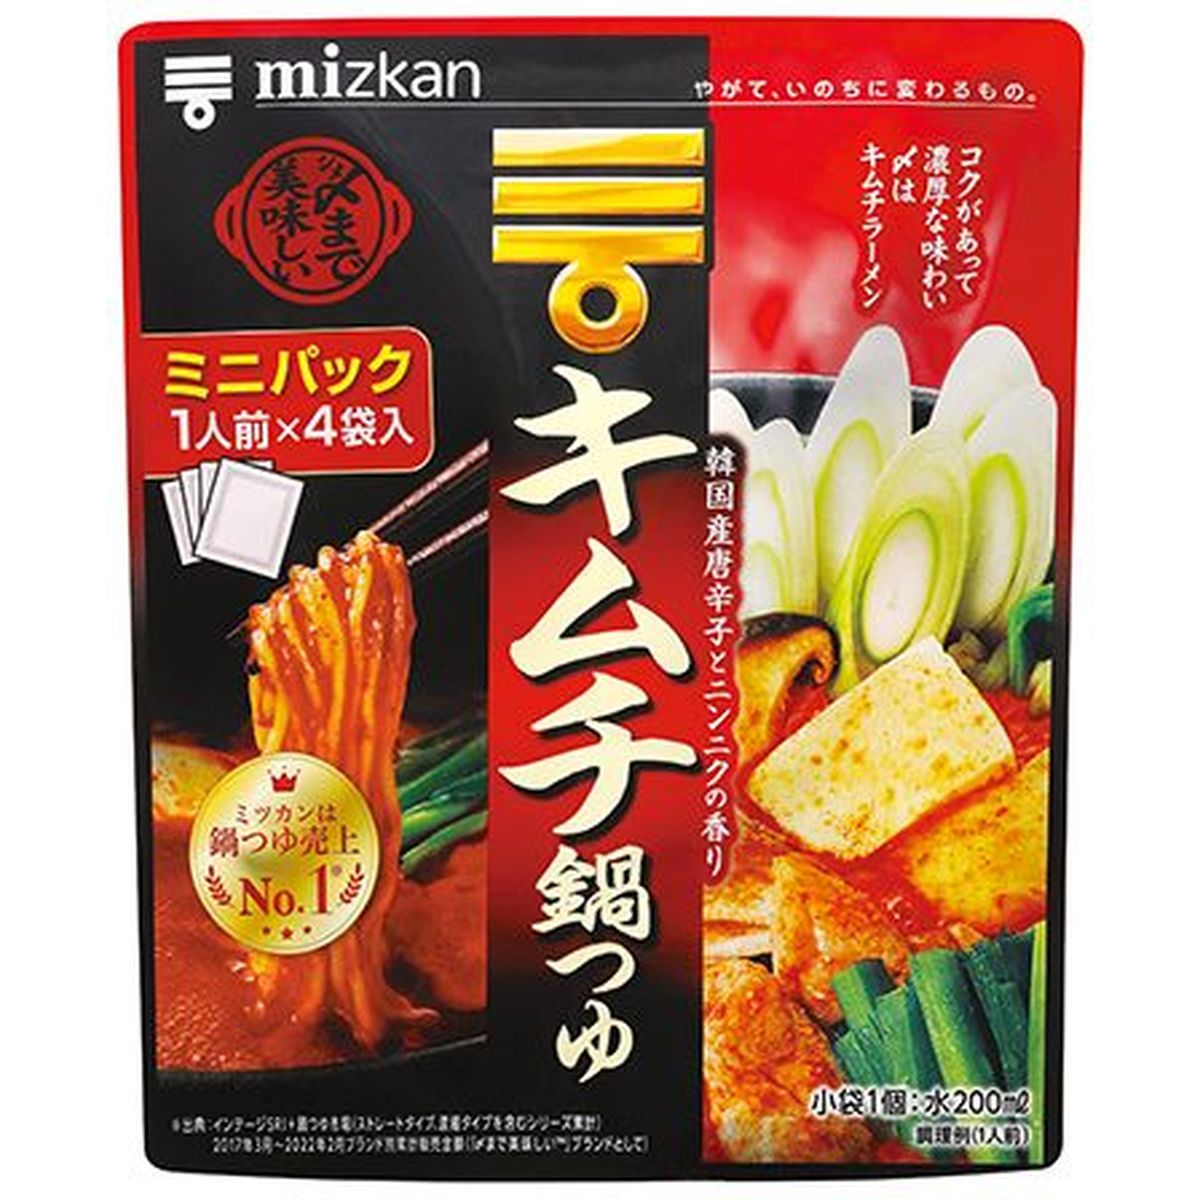 【10個入リ】ミツカン 〆マデ美味シイキムチ鍋ツユミニ 36gX4袋